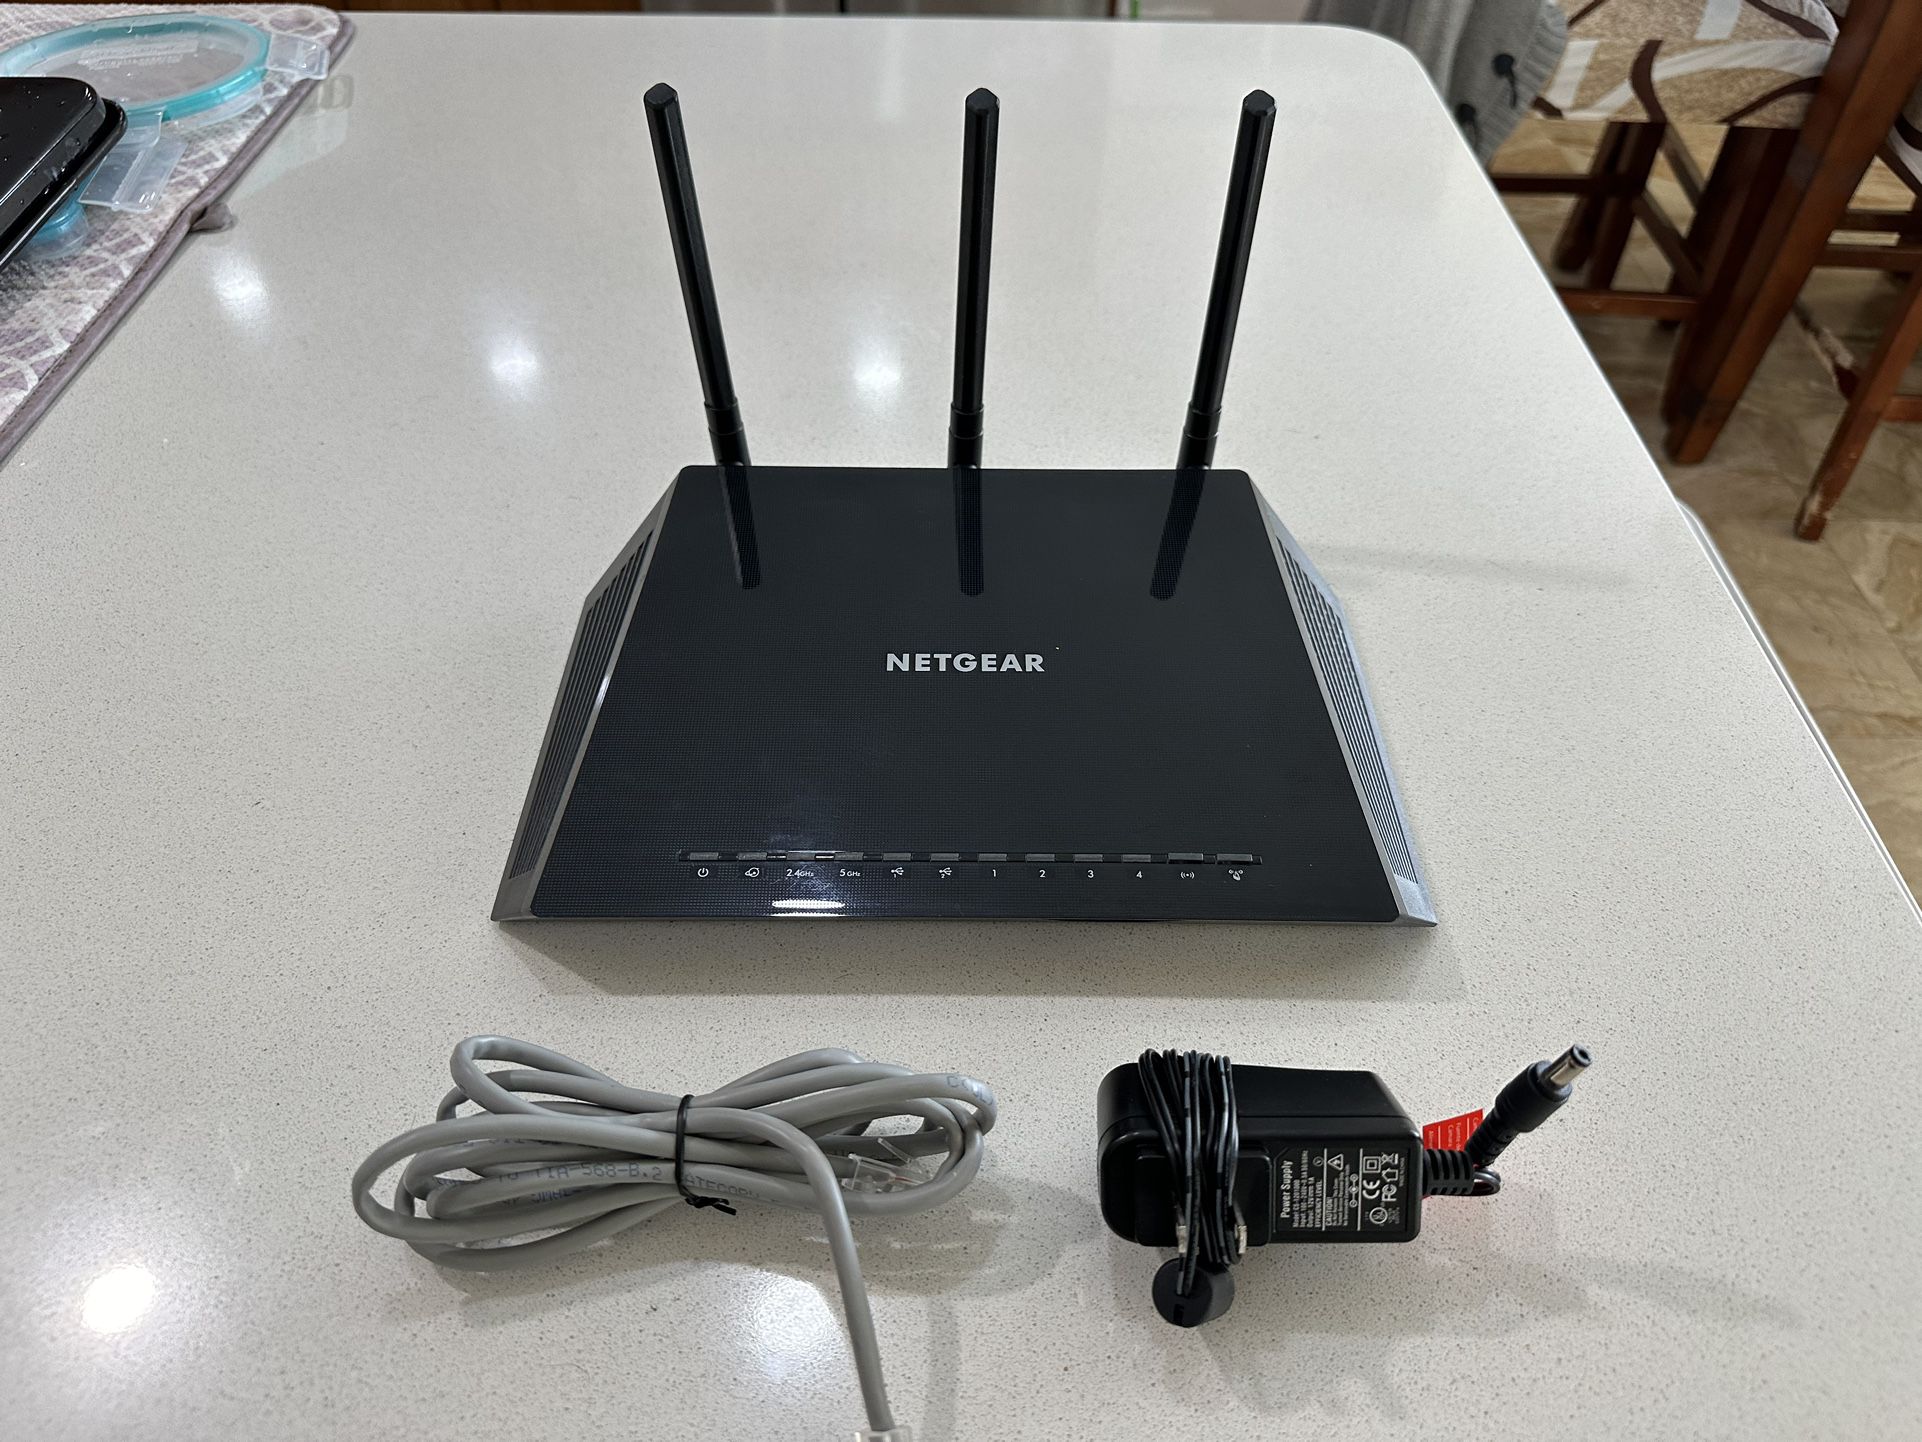 Netgear AC1750 smart WiFi router Model:6400.